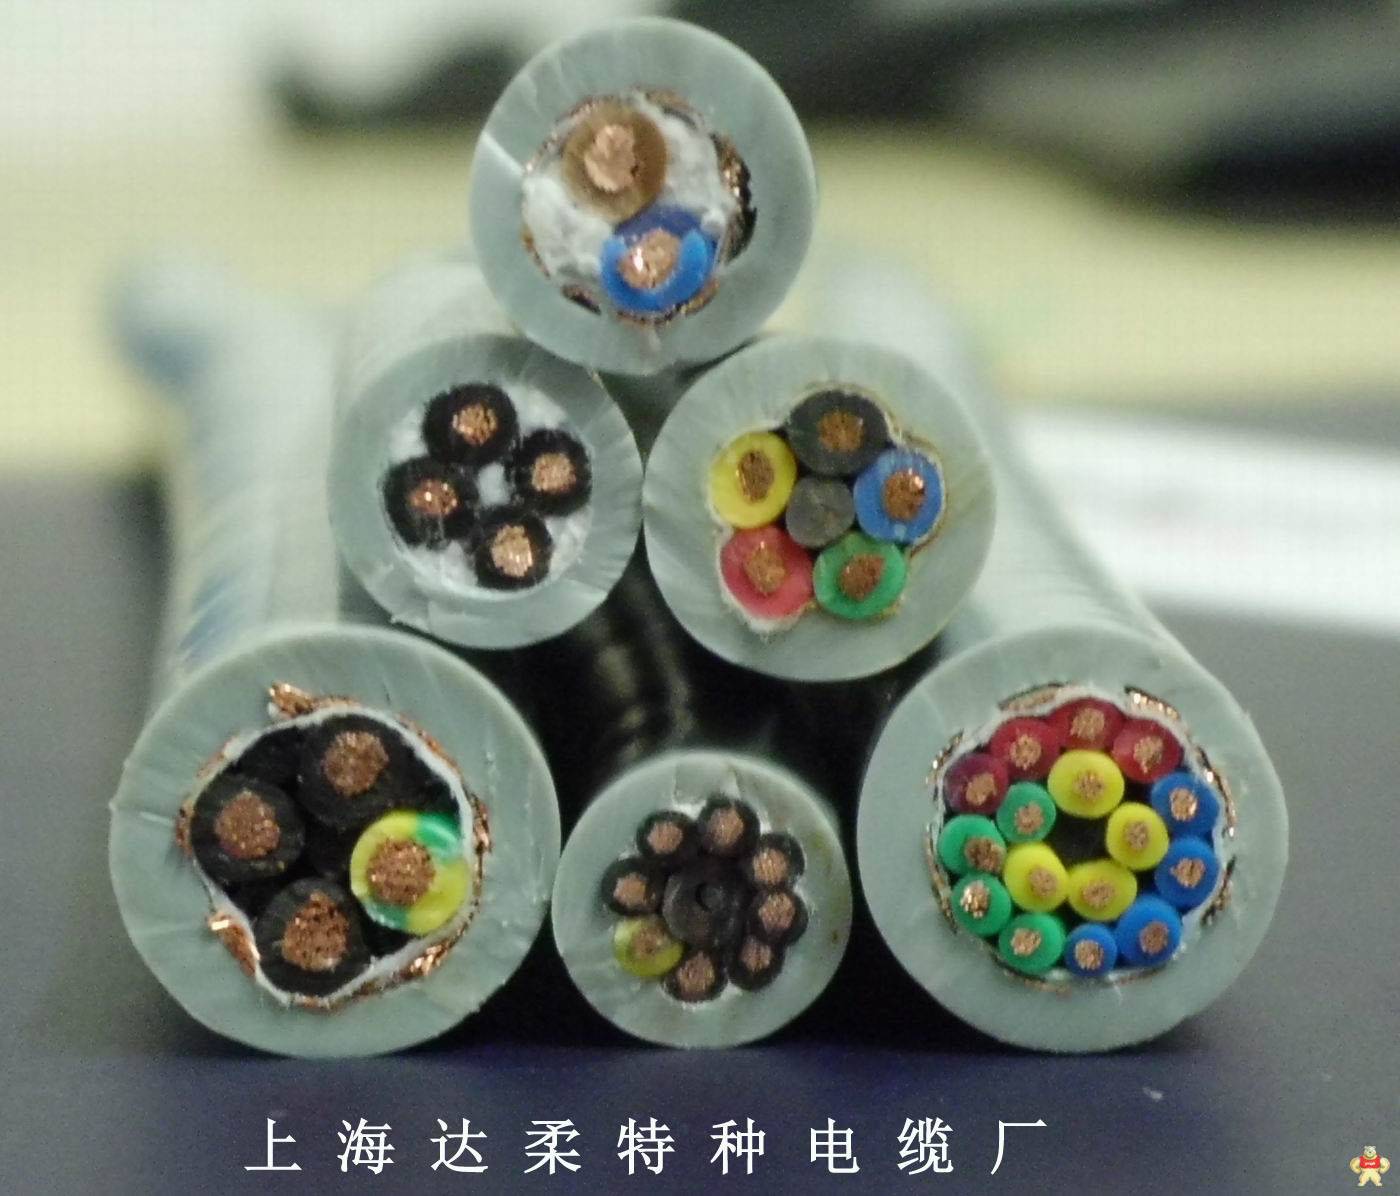 上海达柔供应耐低温电缆抗冻电缆适用于寒冷环境 耐低温电缆,抗冻电缆,-60度低温电缆,-40度低温电缆